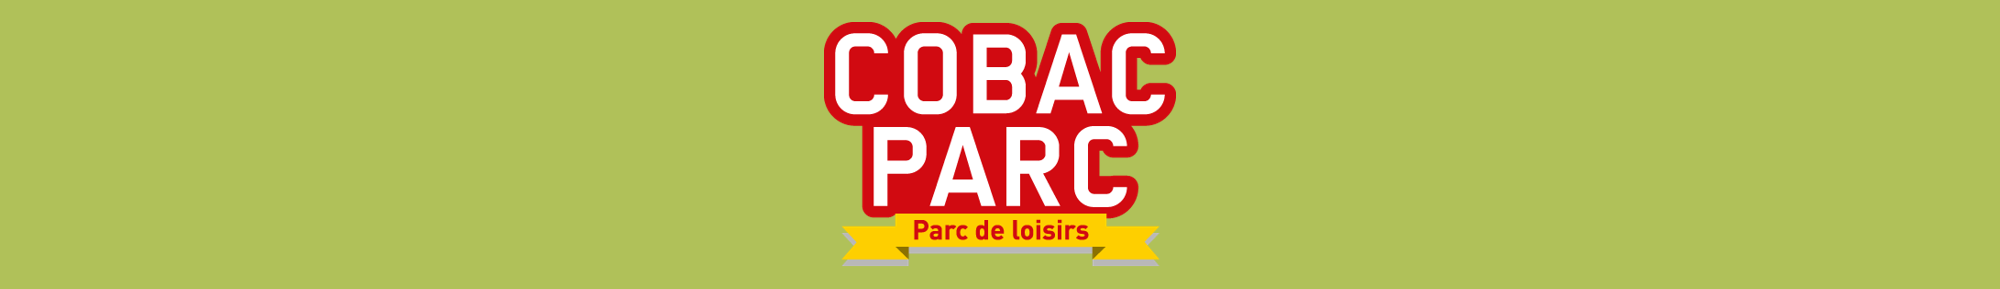 COBAC PARC logo